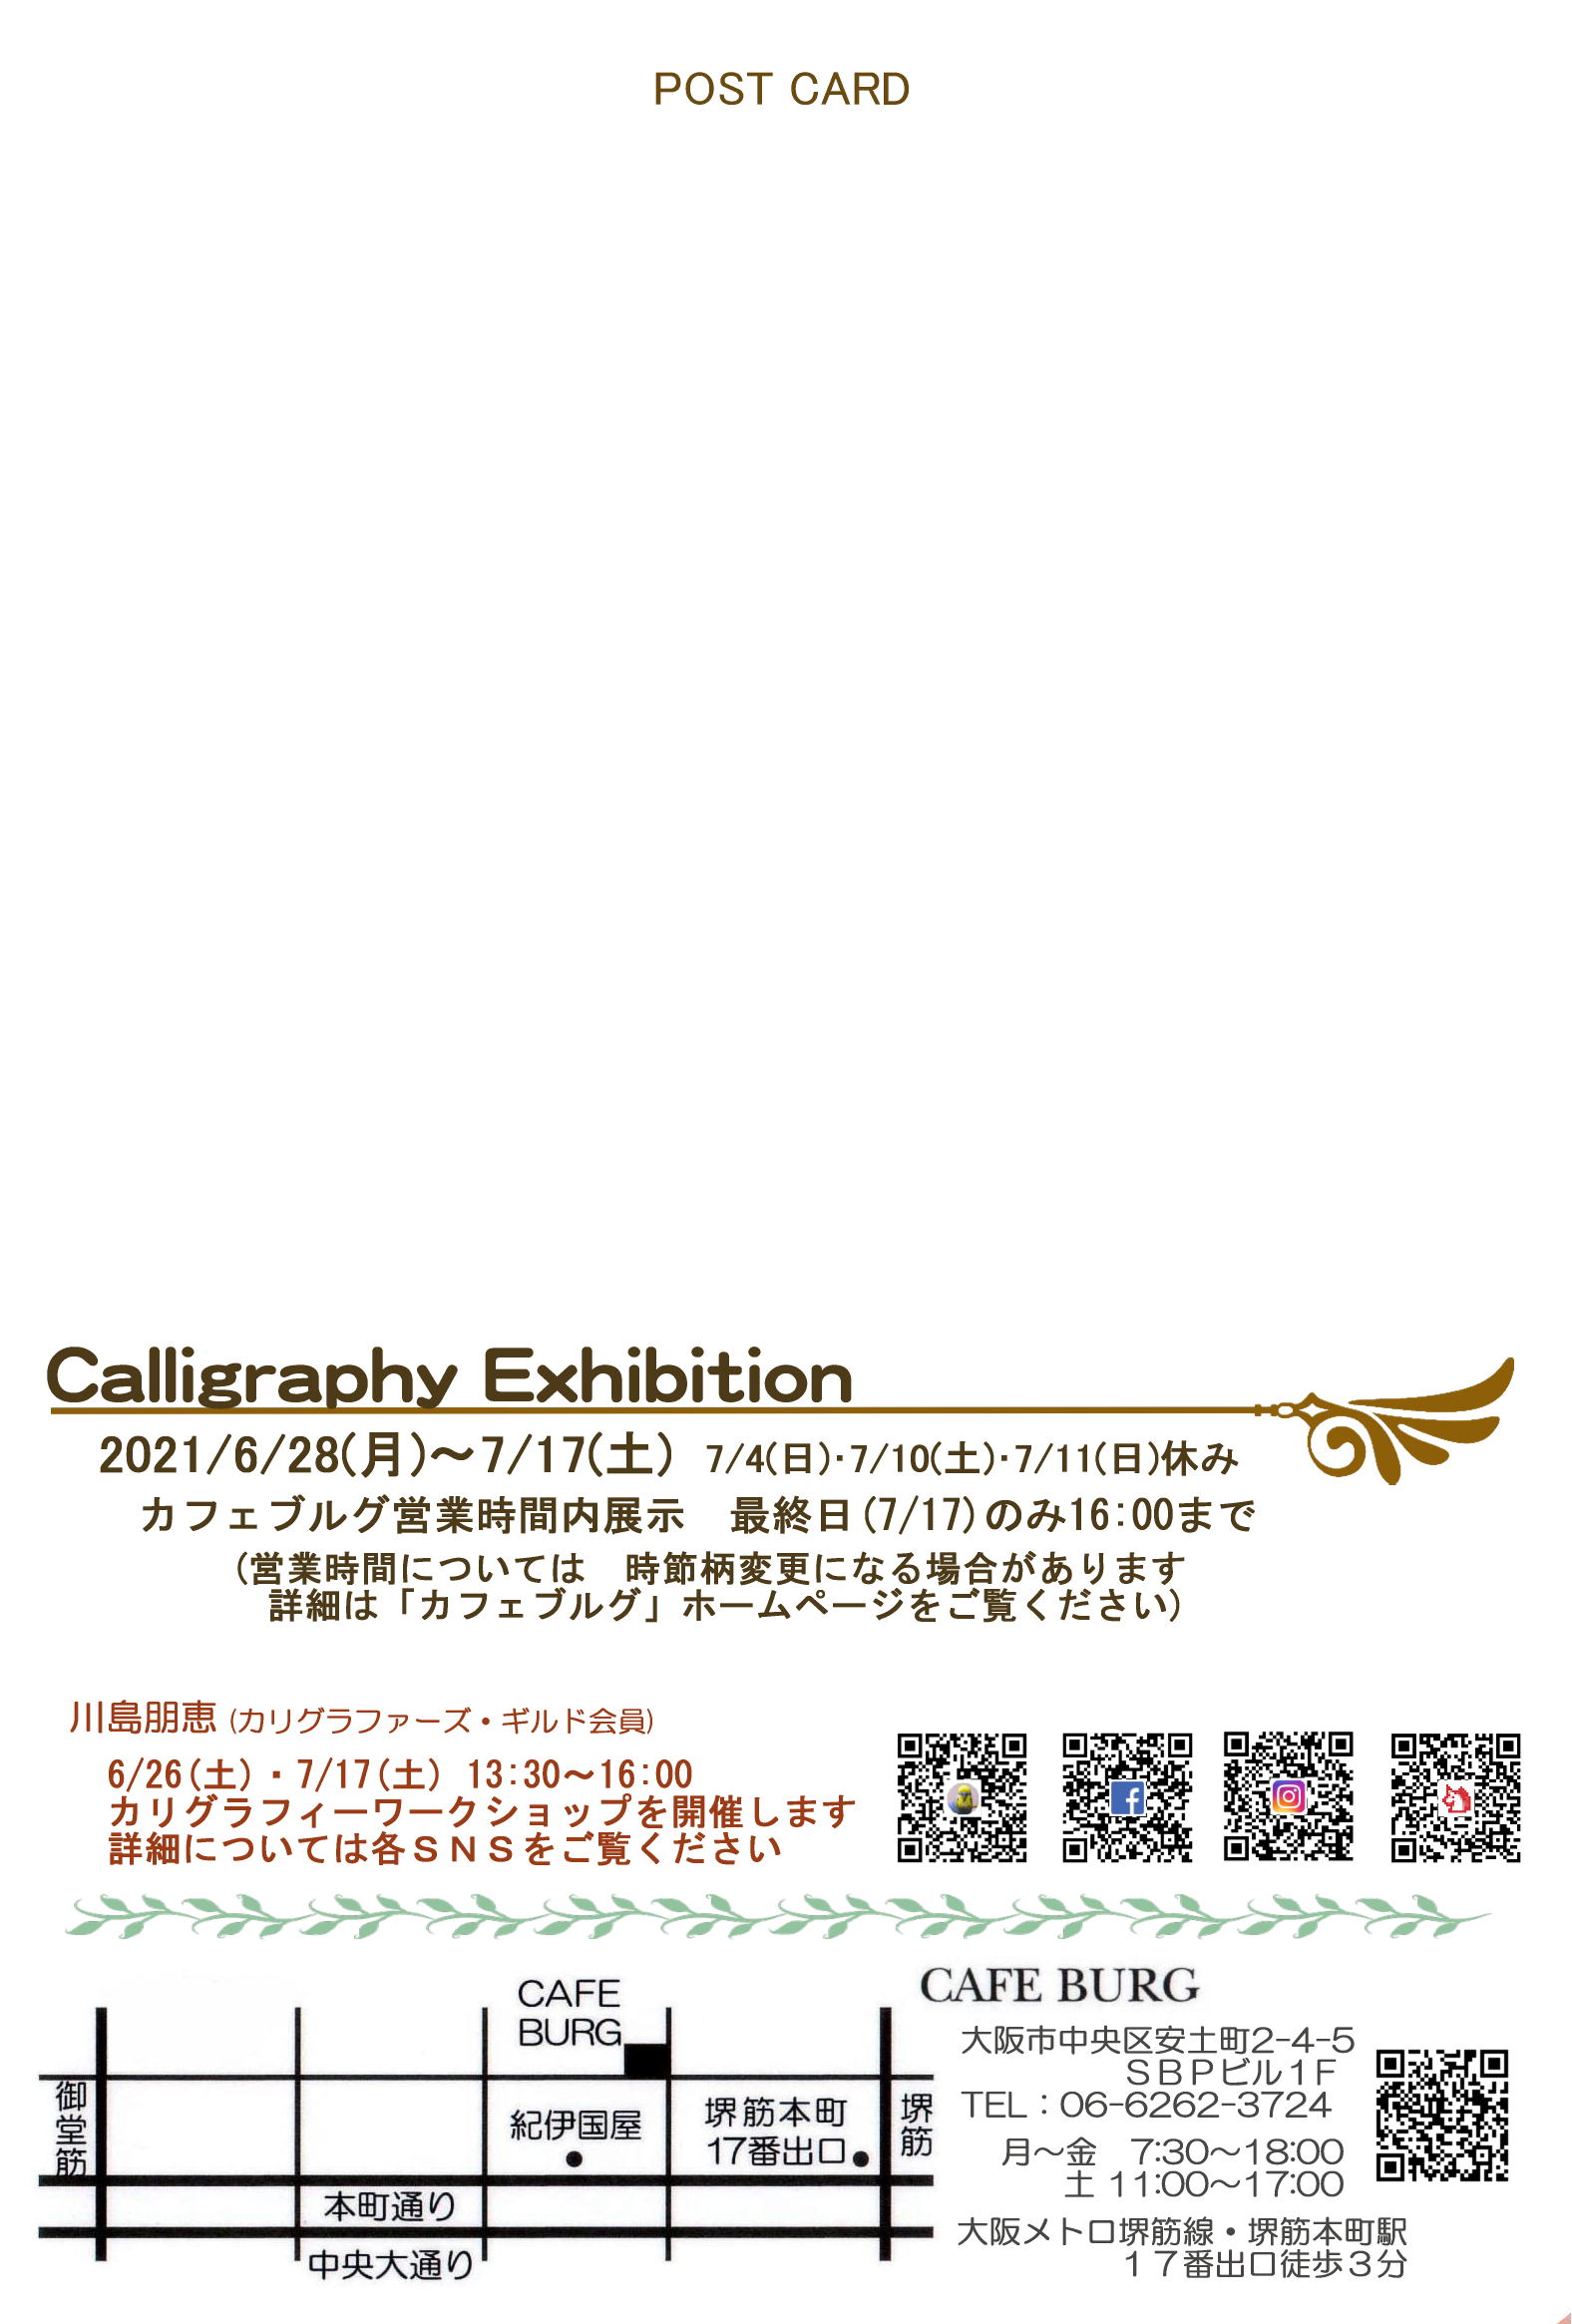 カリグラフィー作品展(裏)再延期日付変更